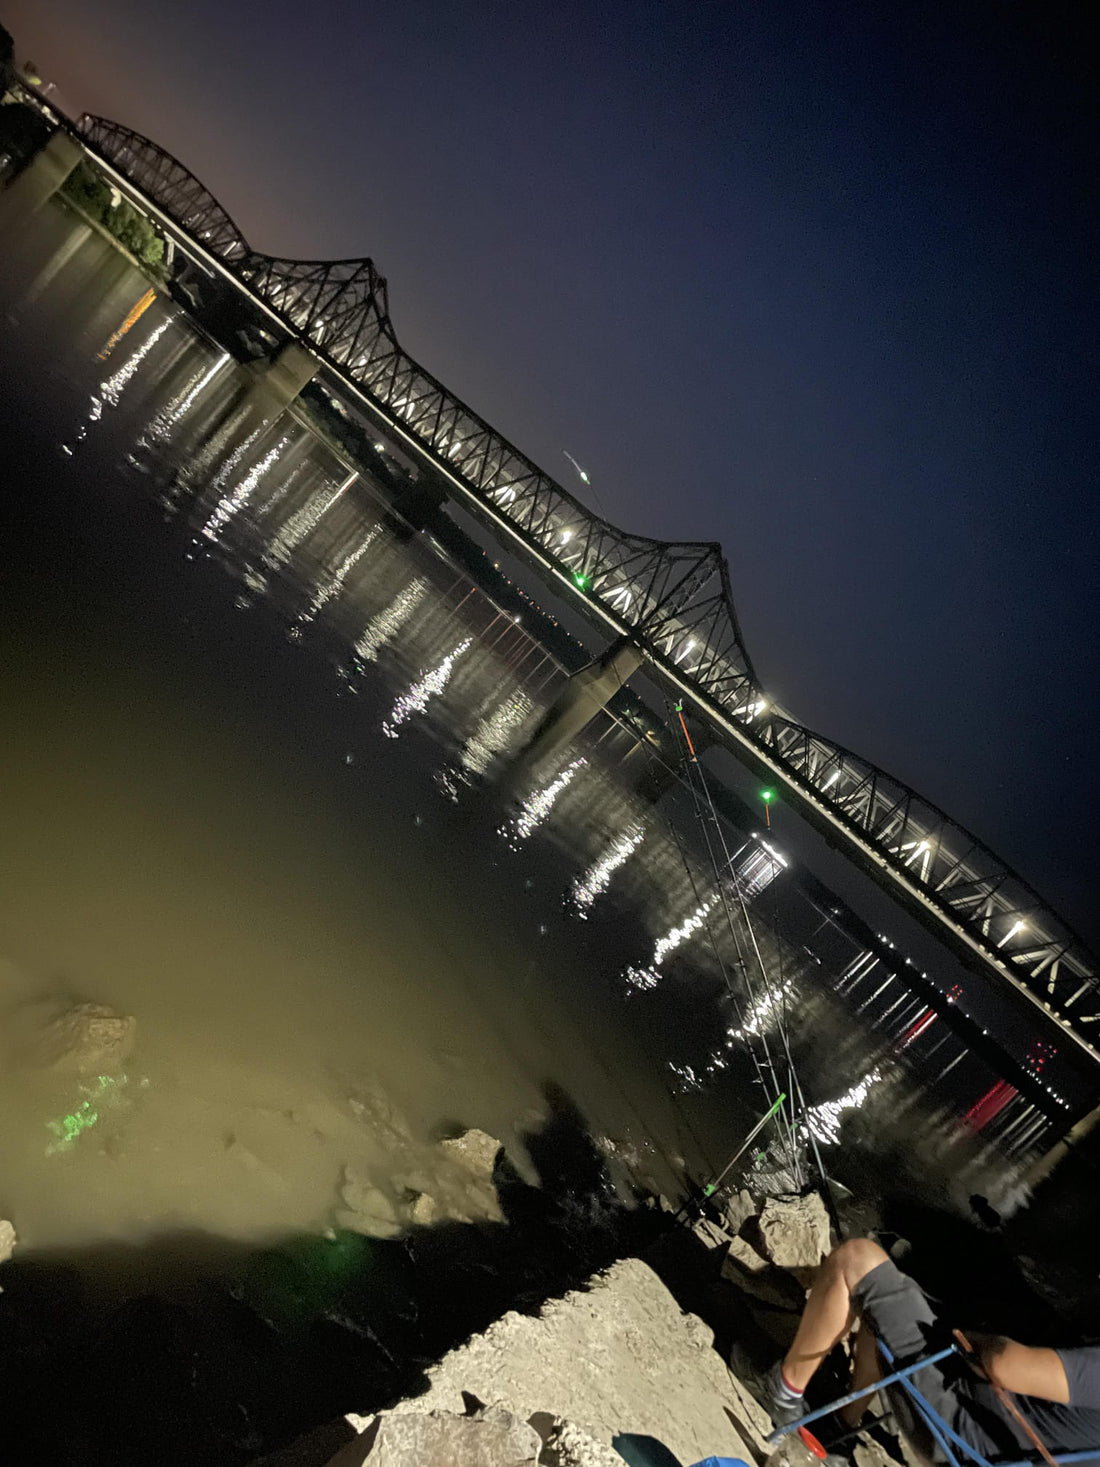 🎣 Pescuitul de noapte devine ușor cu o lanternă de cap ergonomică everbeam România